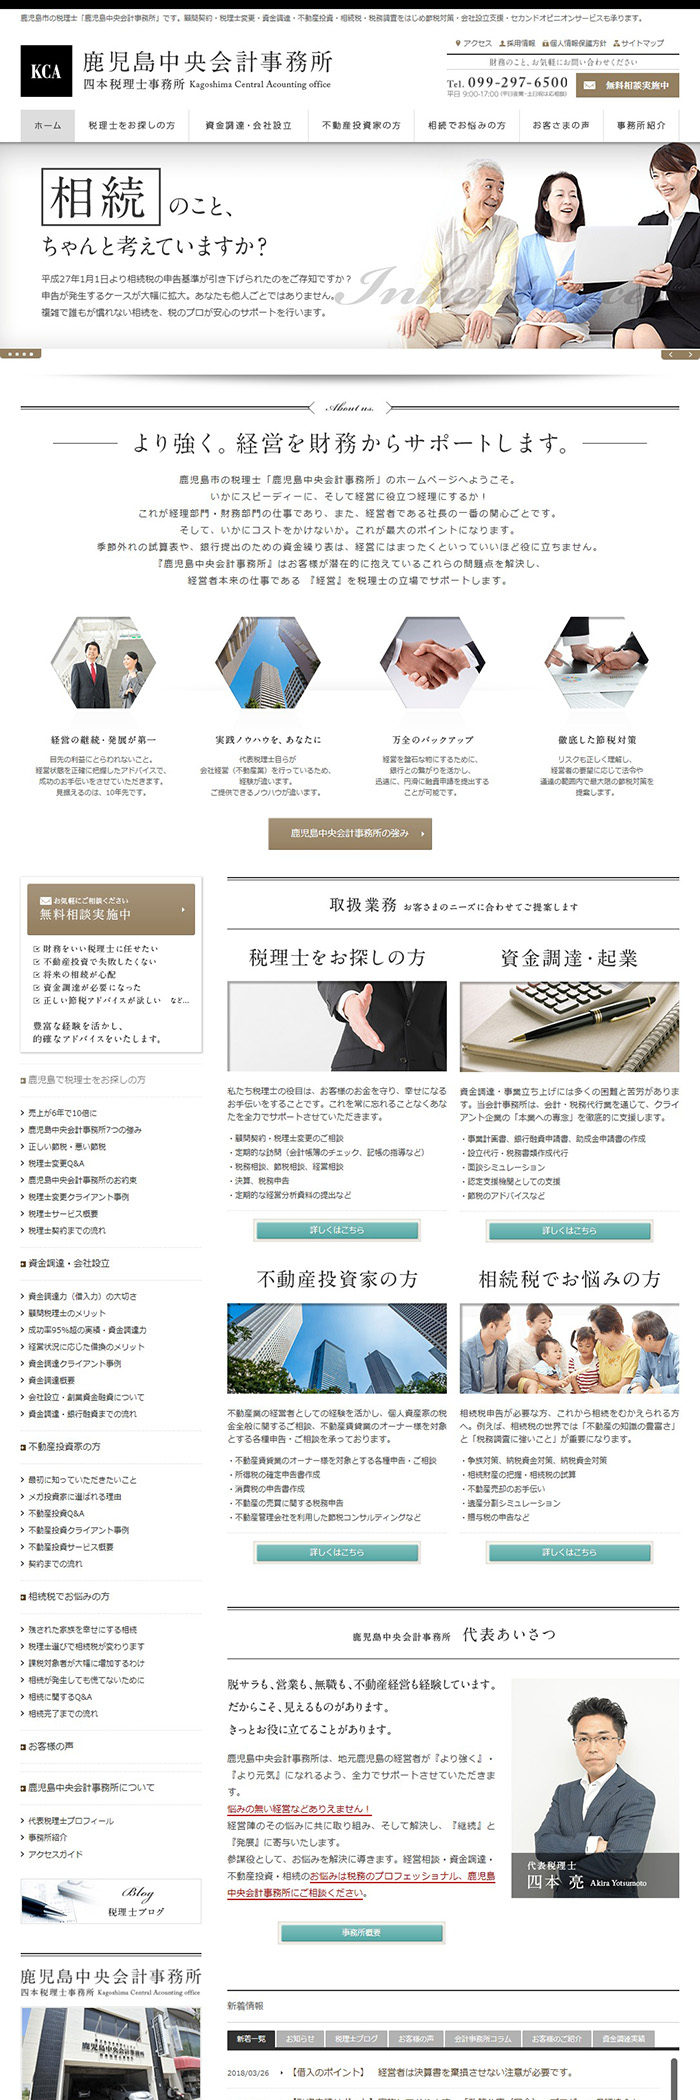 鹿児島中央会計事務所様ホームページ制作実績 デスクトップイメージ